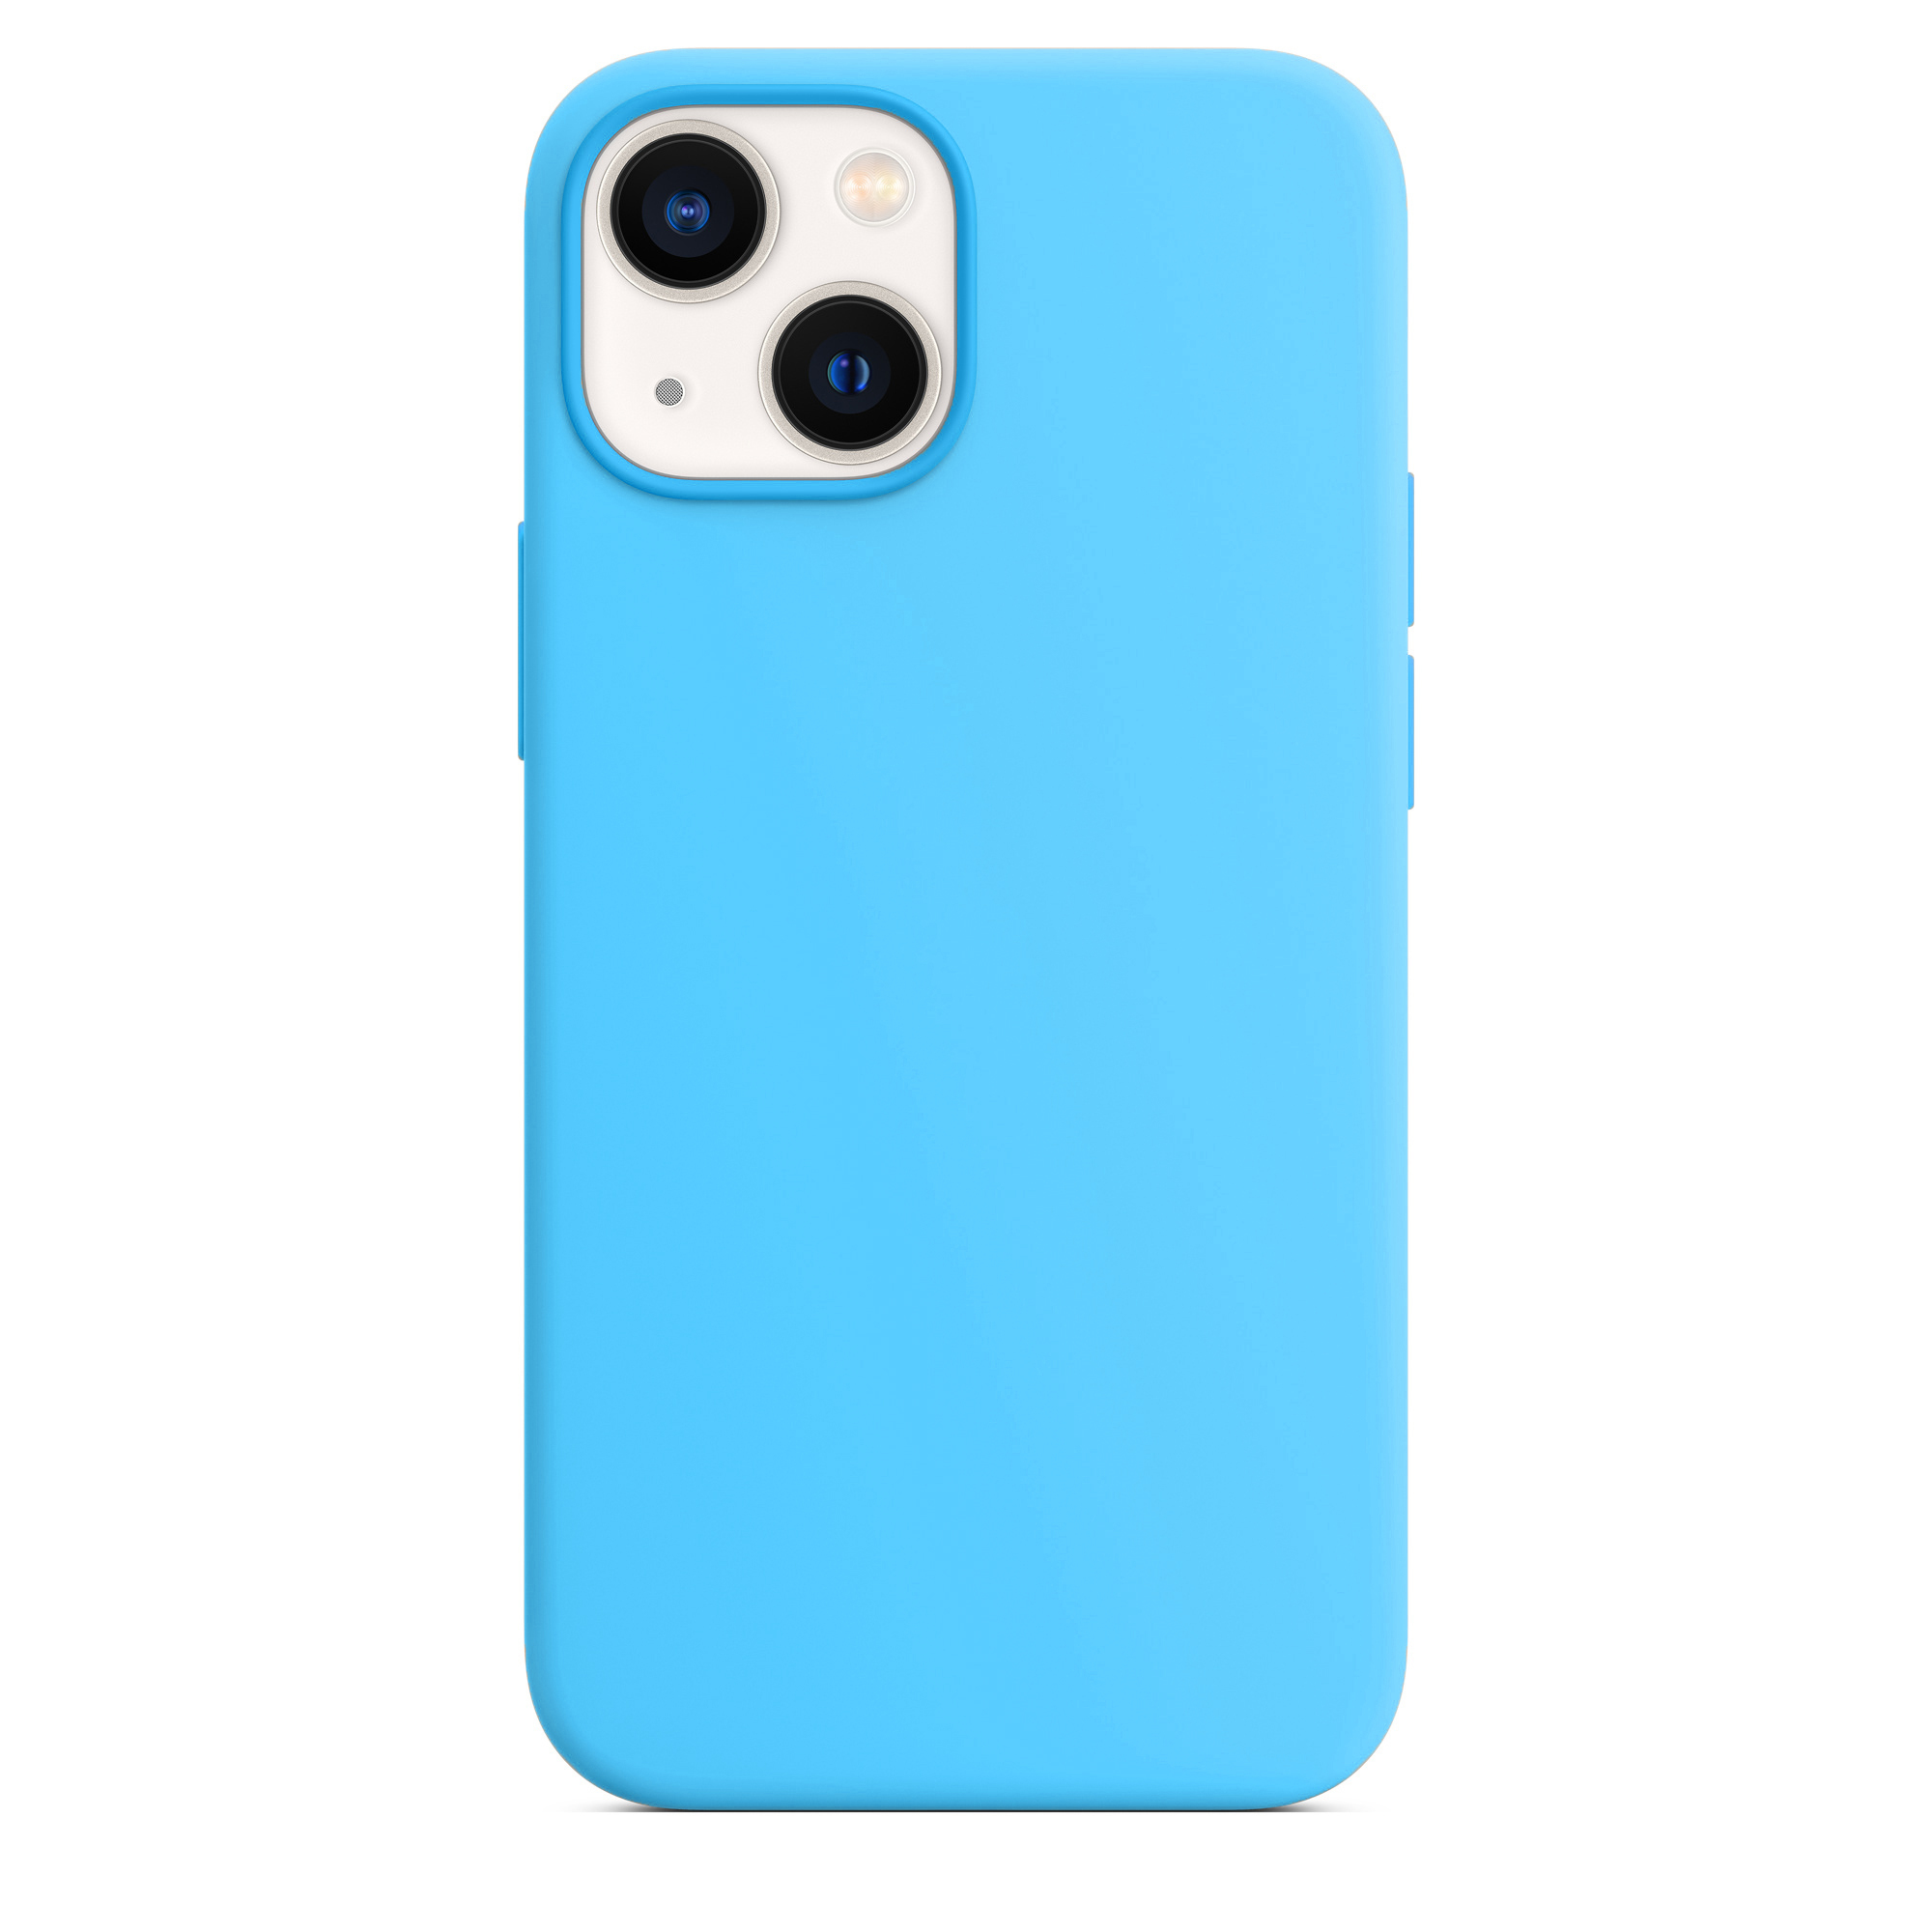 фото айфона синего цвета